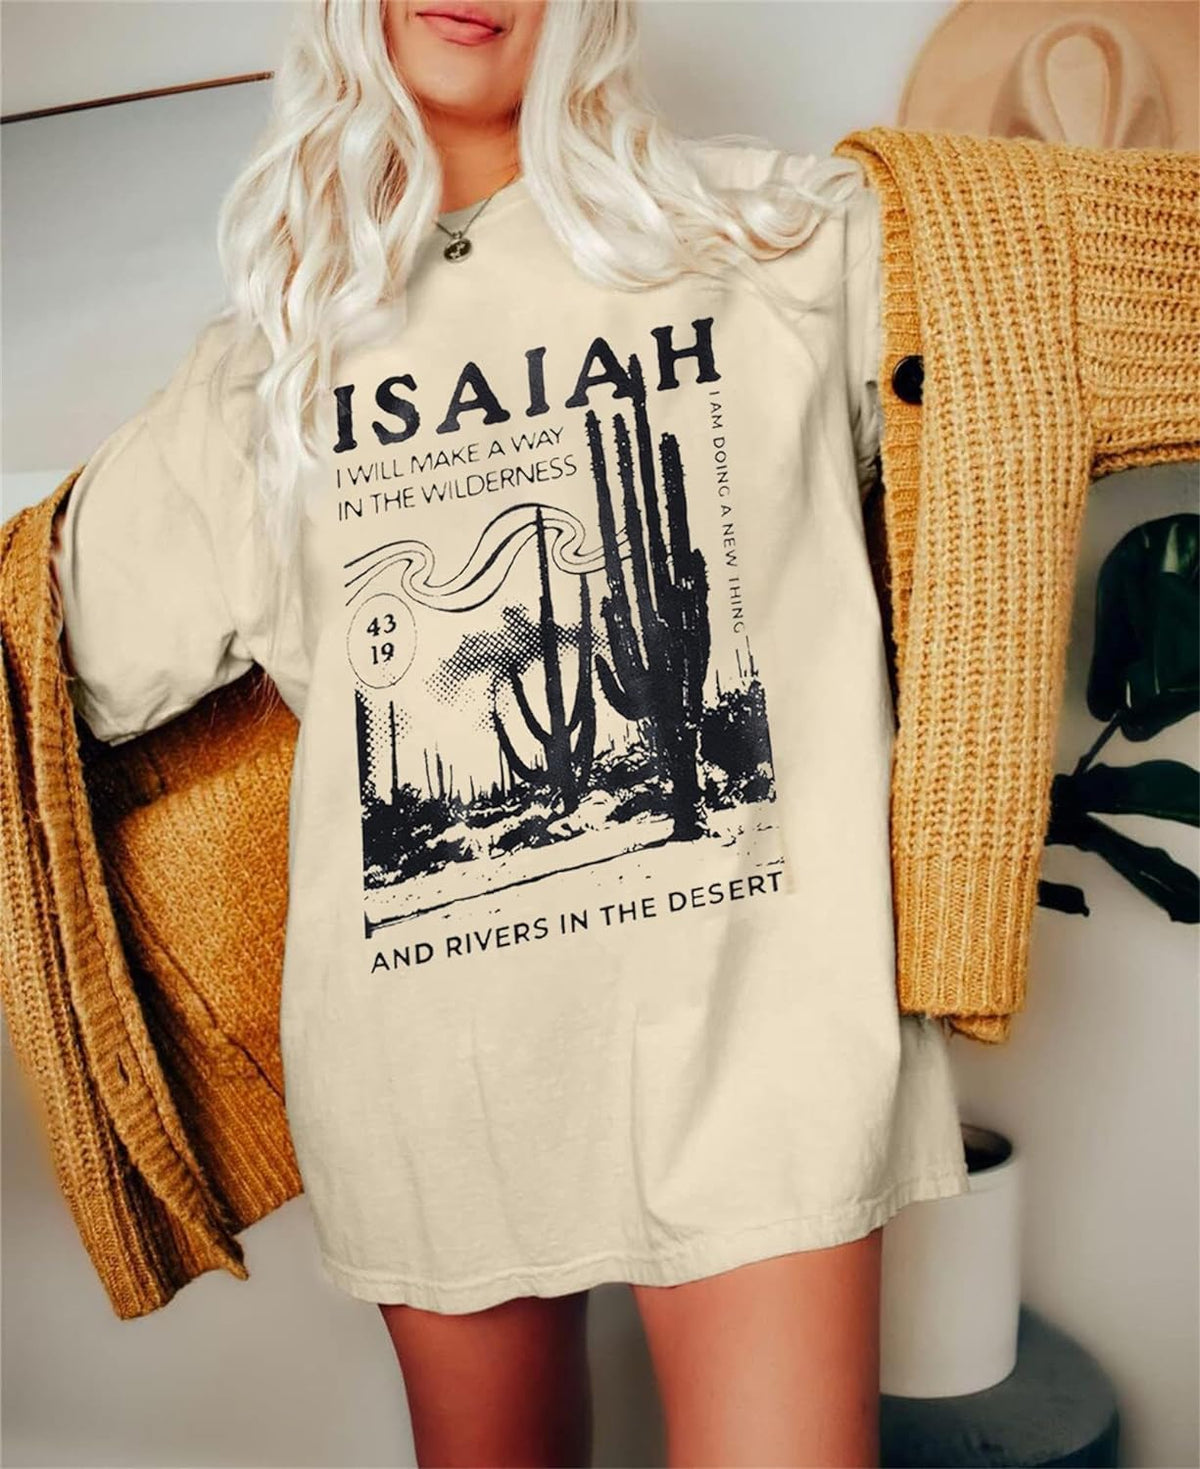 Women Oversized Faith Christian Religious T-Shirt